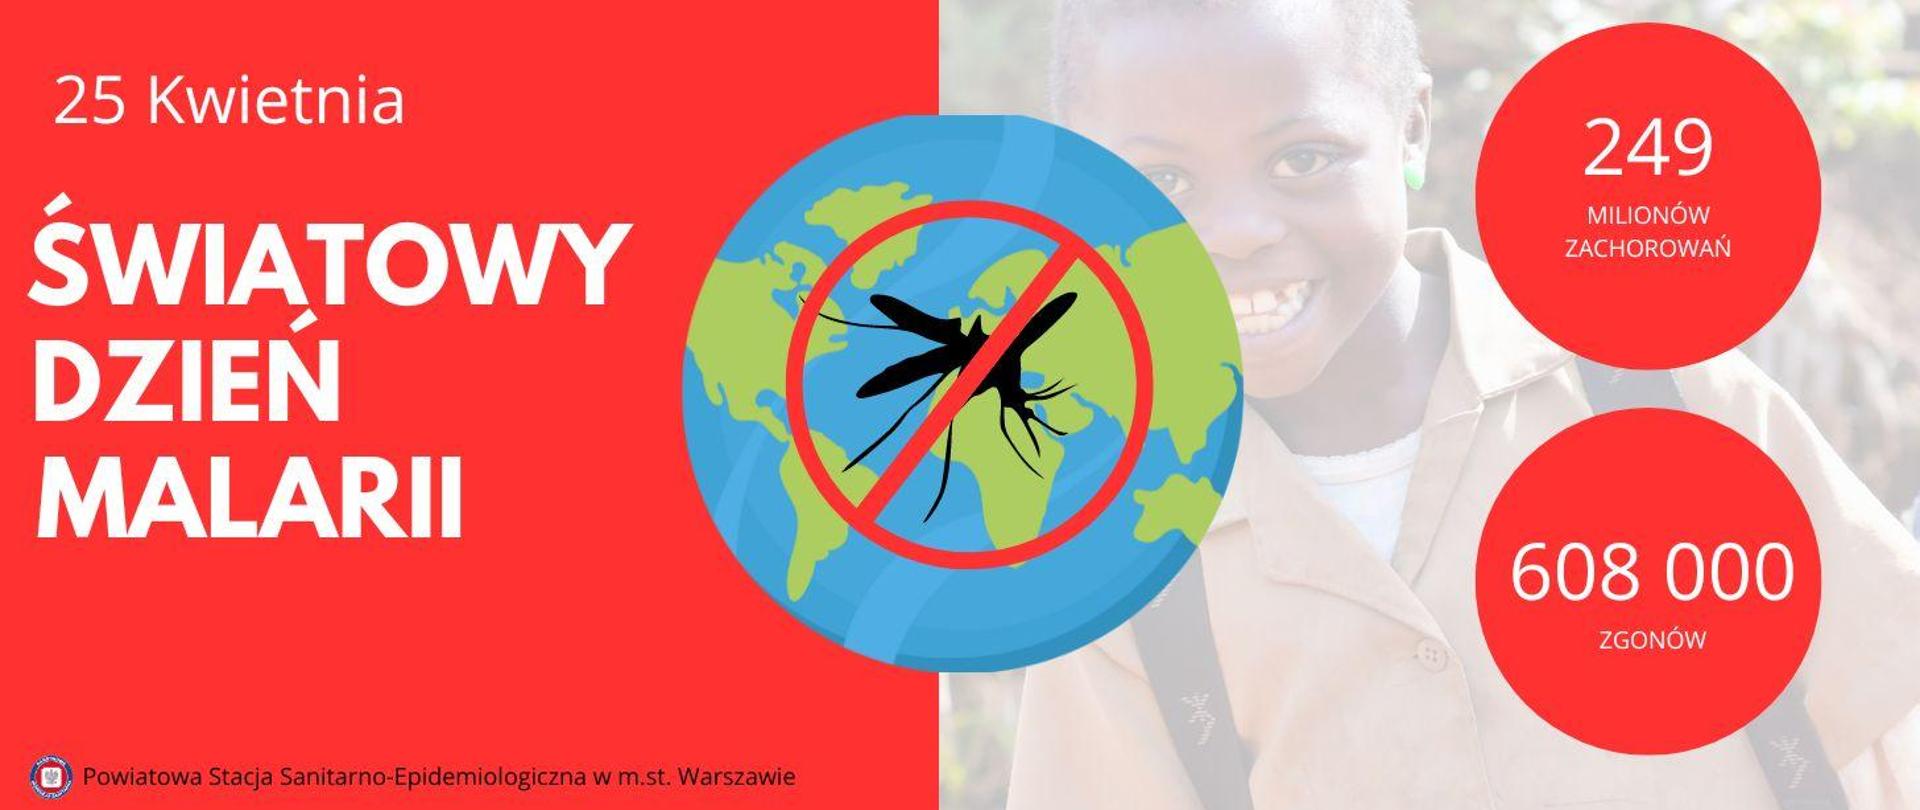 24 KWIETNIA światowy dzień malarii - 249 milionów zachorowań; 608 000 zgonów 